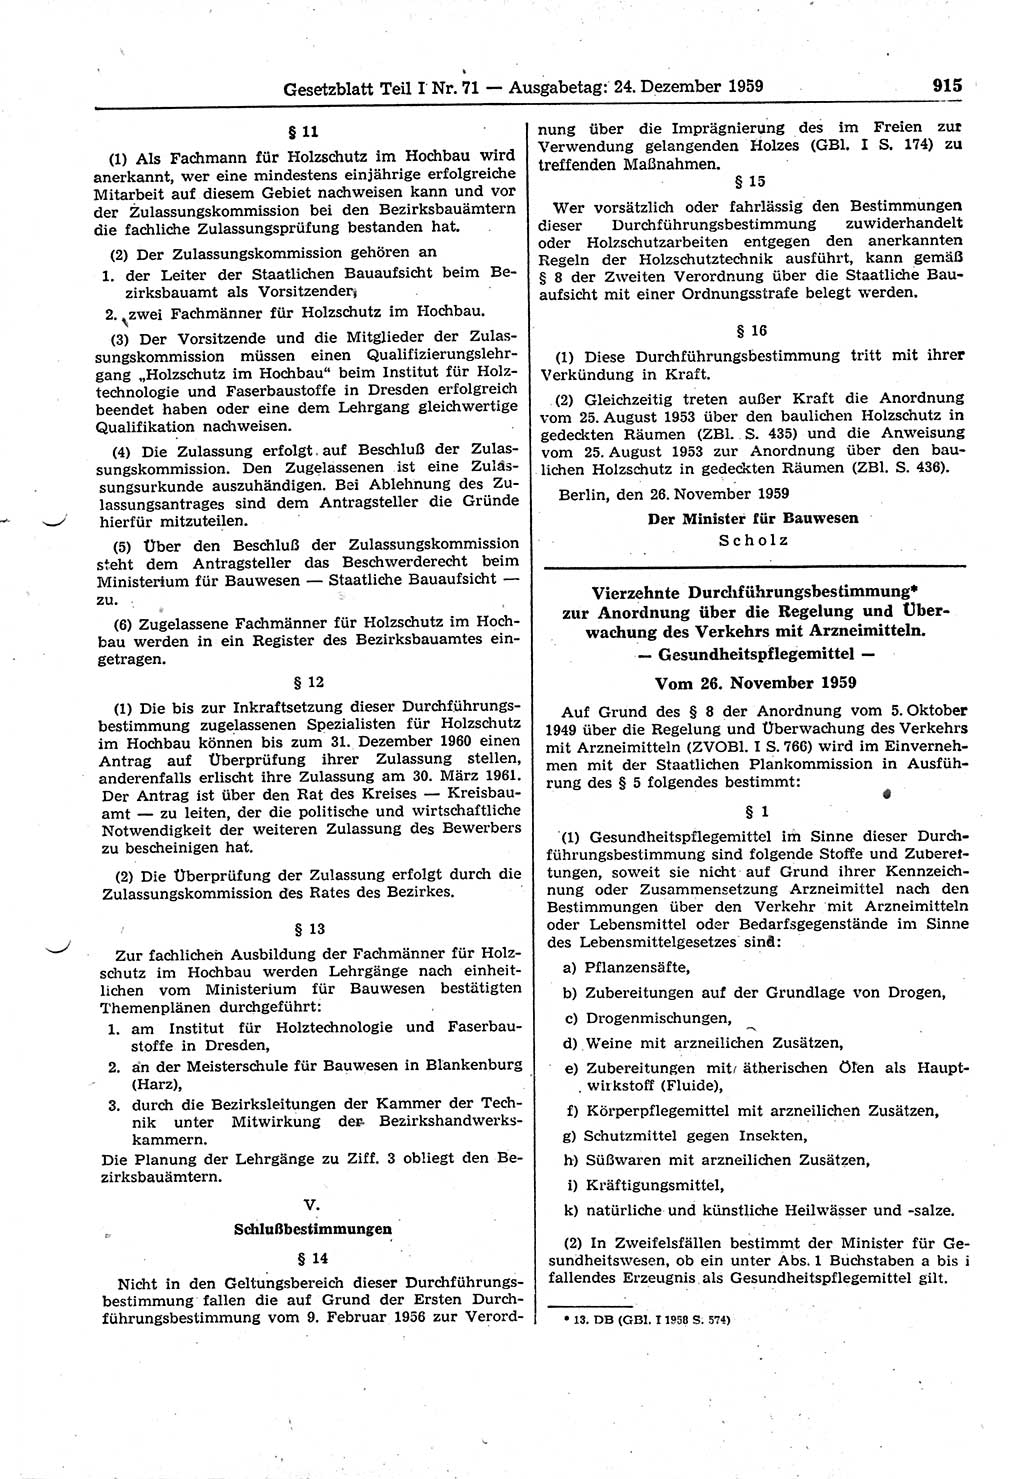 Gesetzblatt (GBl.) der Deutschen Demokratischen Republik (DDR) Teil Ⅰ 1959, Seite 915 (GBl. DDR Ⅰ 1959, S. 915)